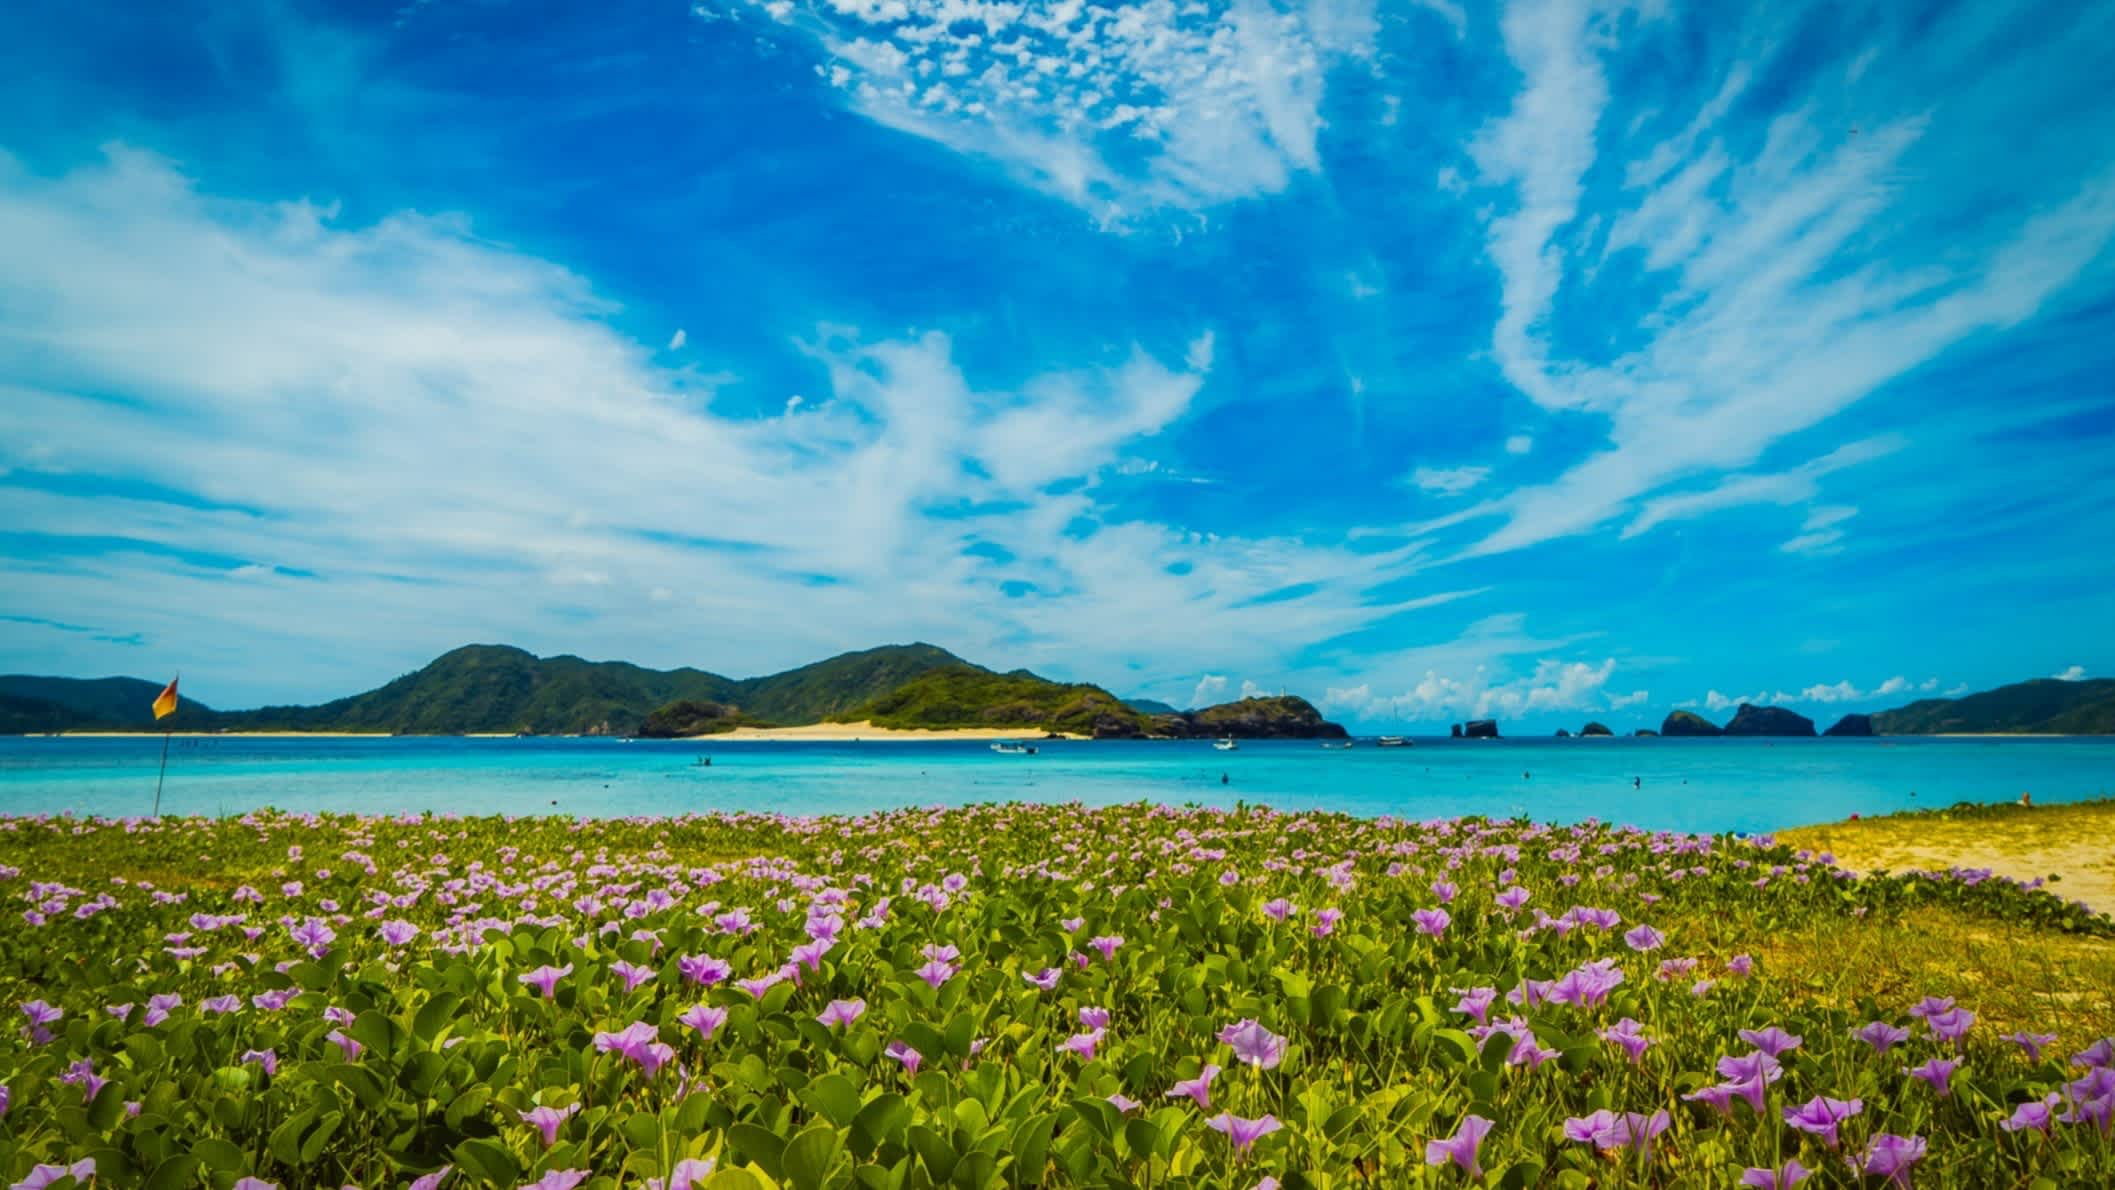 Strand Ama Beach, Zamami Island, Okinawa, Japan mit Blumenmeer am Strand und Blick auf das Meer sowie vorgelagerte Inseln und den blauen Himmel.